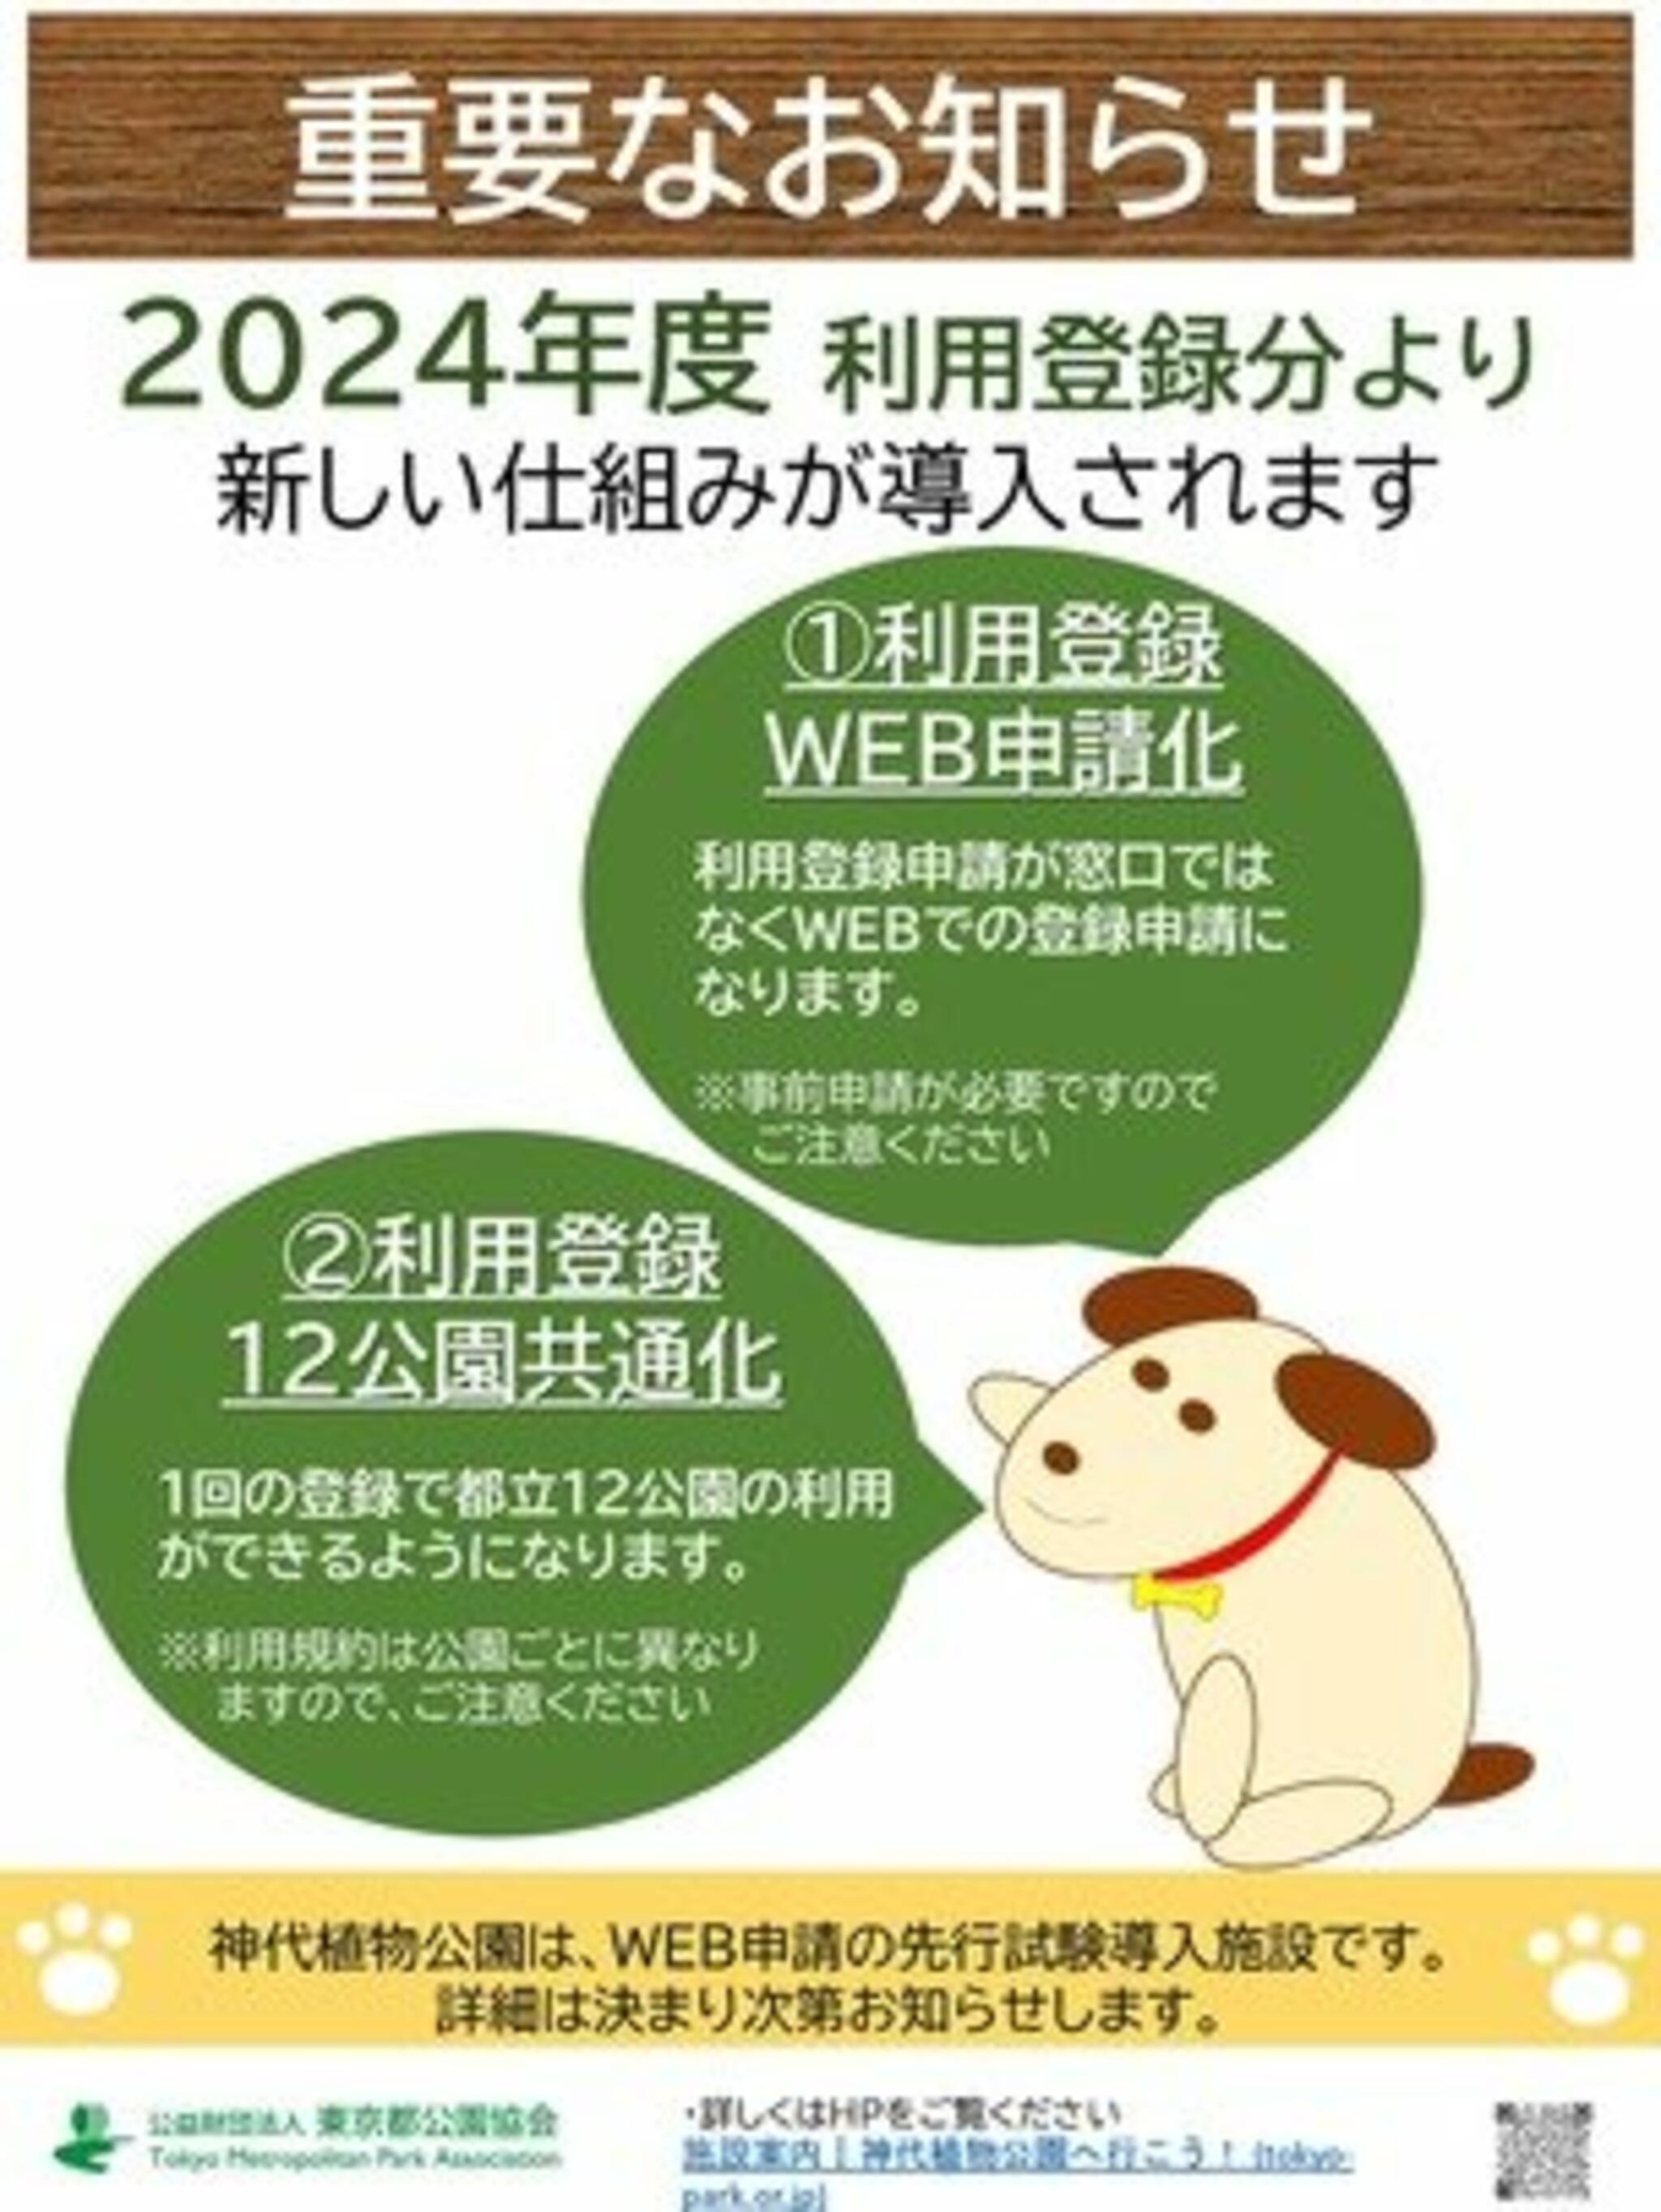 神代植物公園からのお知らせ(【重要なお知らせ】ドッグランの利用登録について)に関する写真